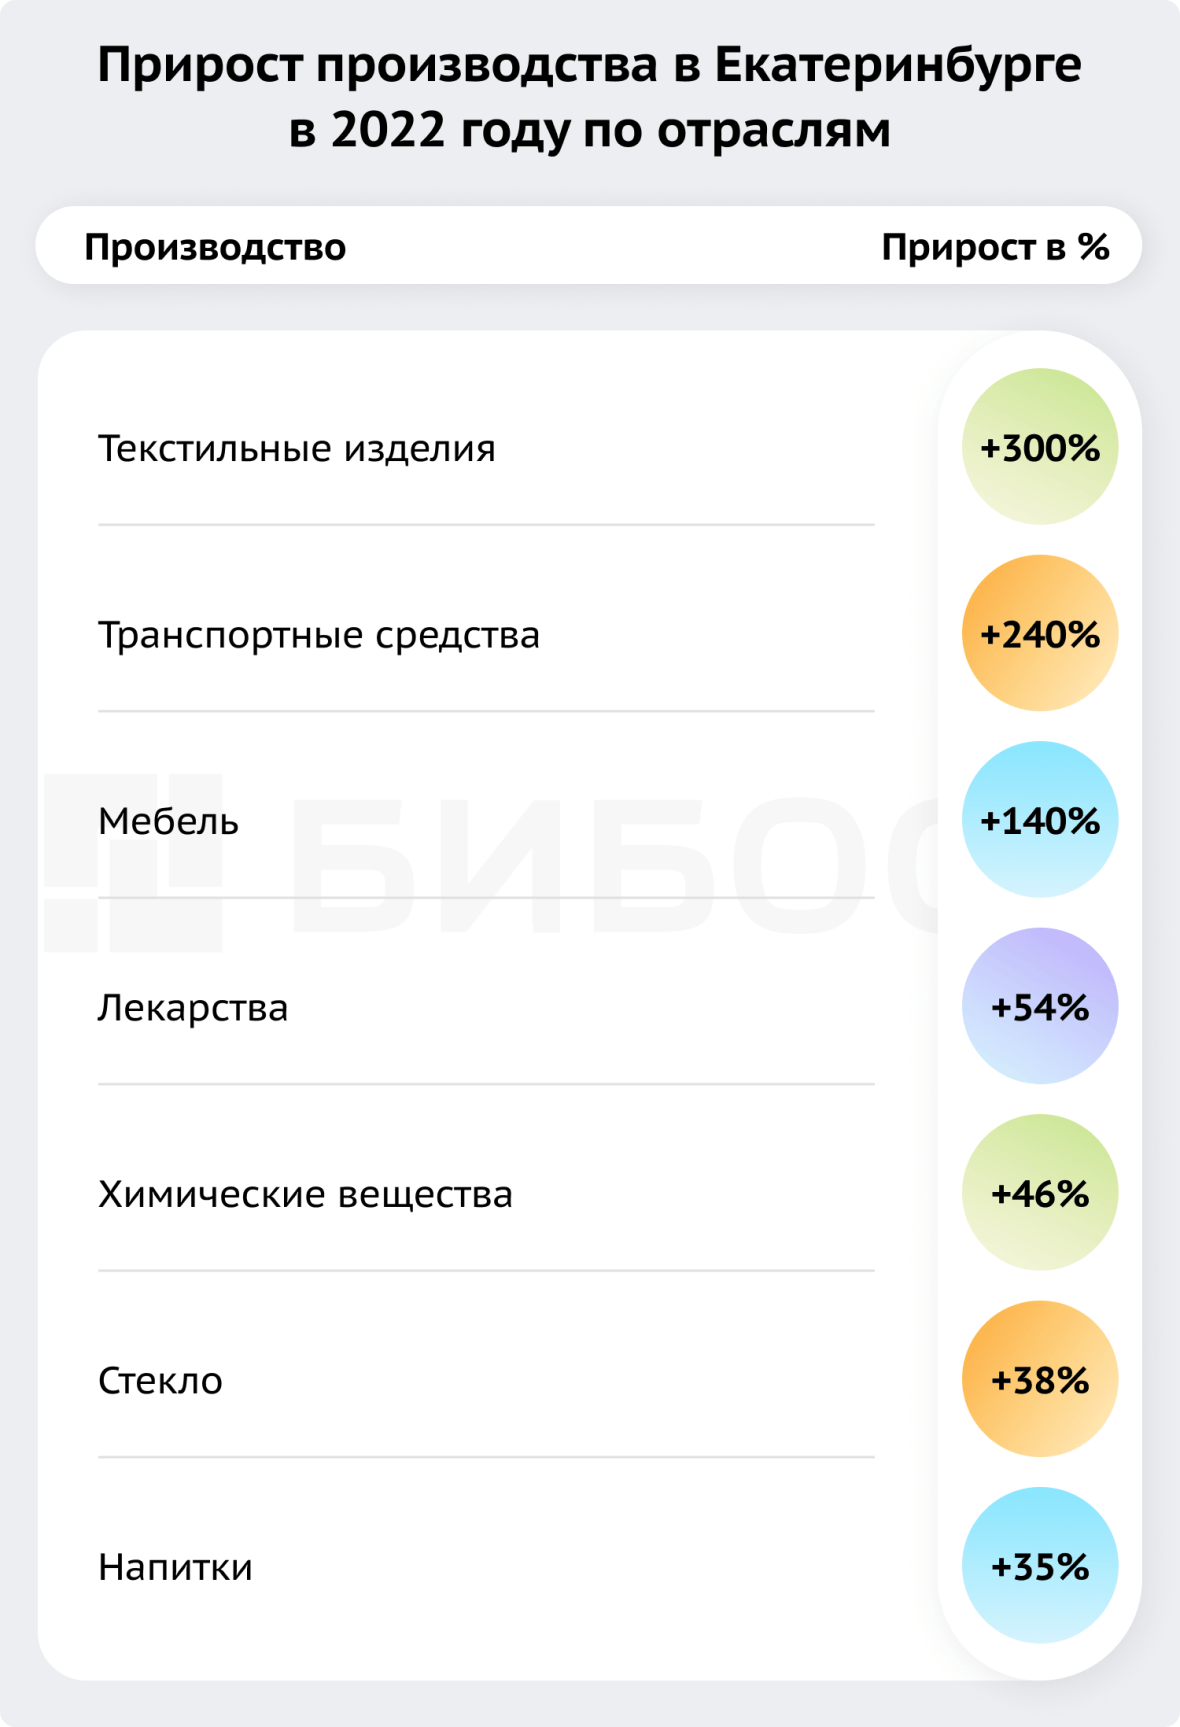 Прирост производства в Екатеринбурге в 2022 году по отралсям